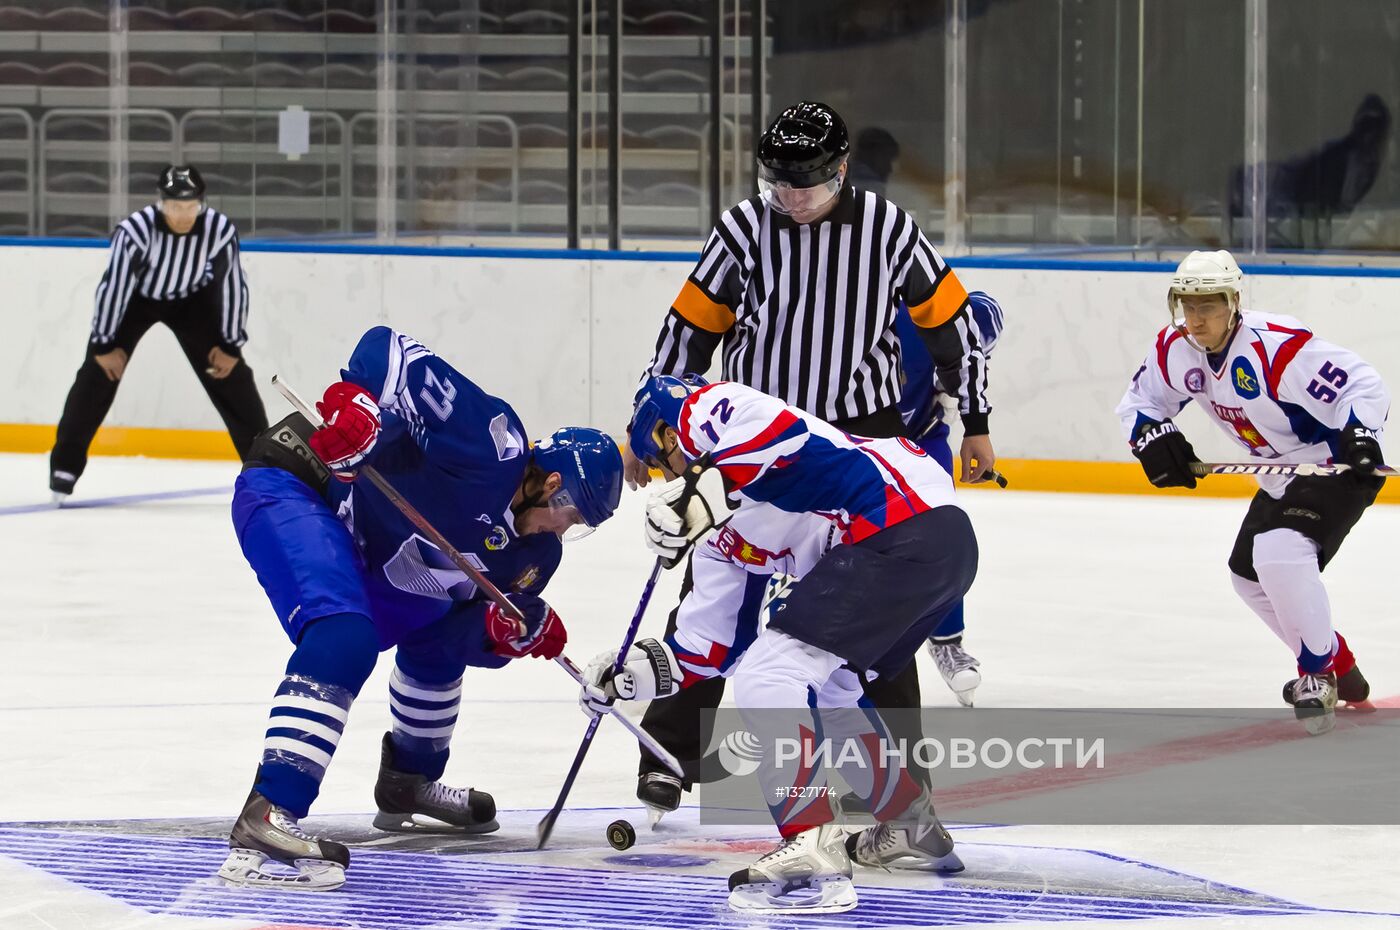 Первый хоккейный матч в ледовом дворце "Большой" в Сочи